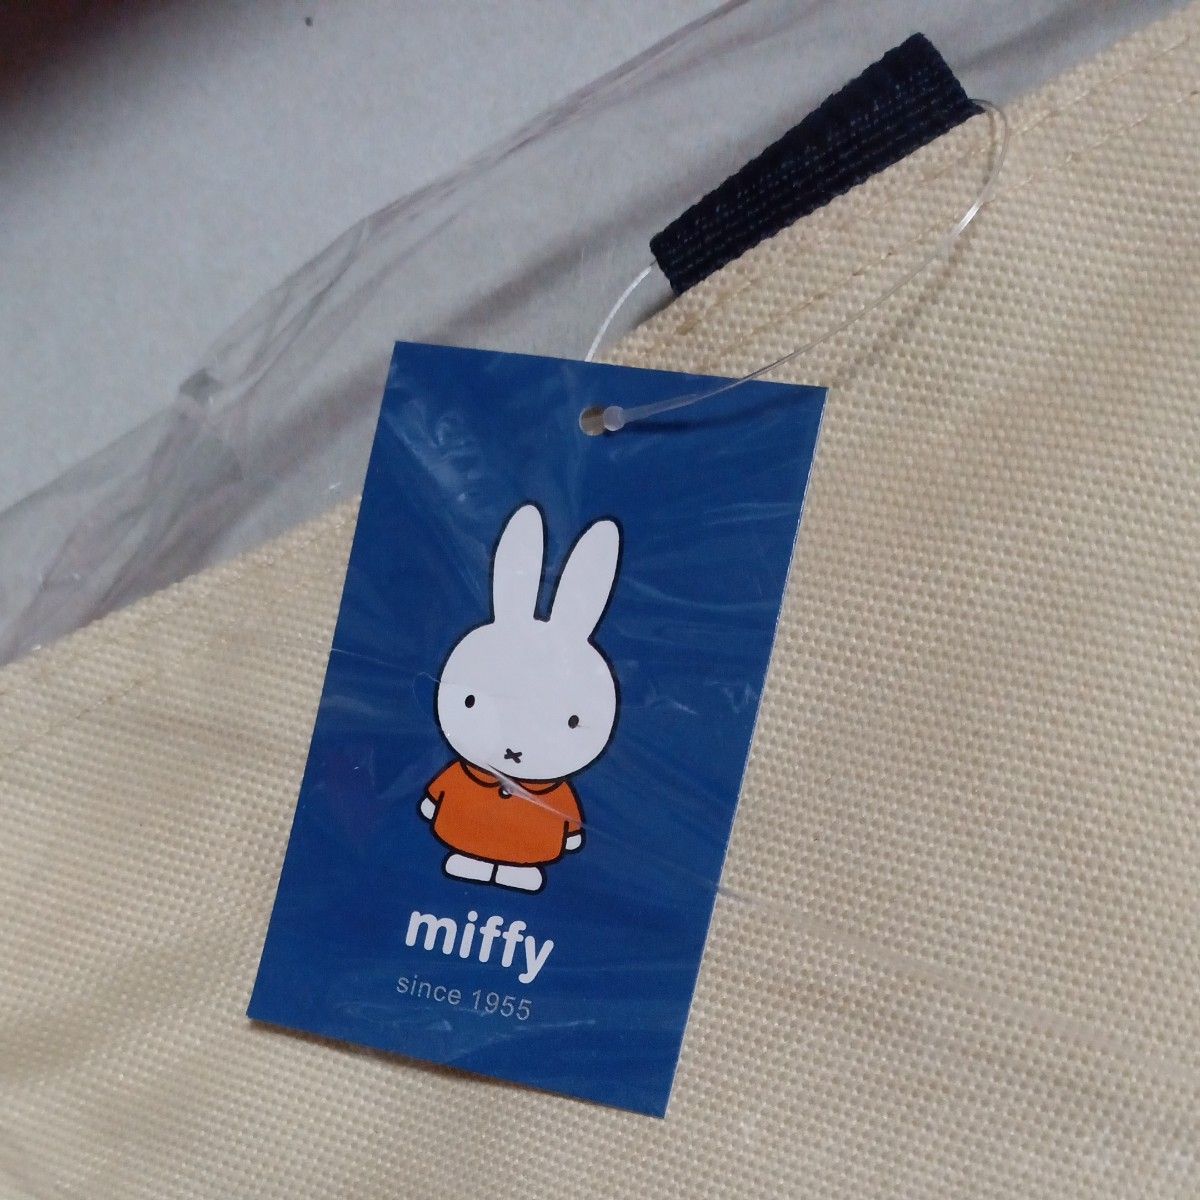 miffy　ミッフィー　ビッグトートバック　トートバック　内ポケット付き　新品未使用未開封